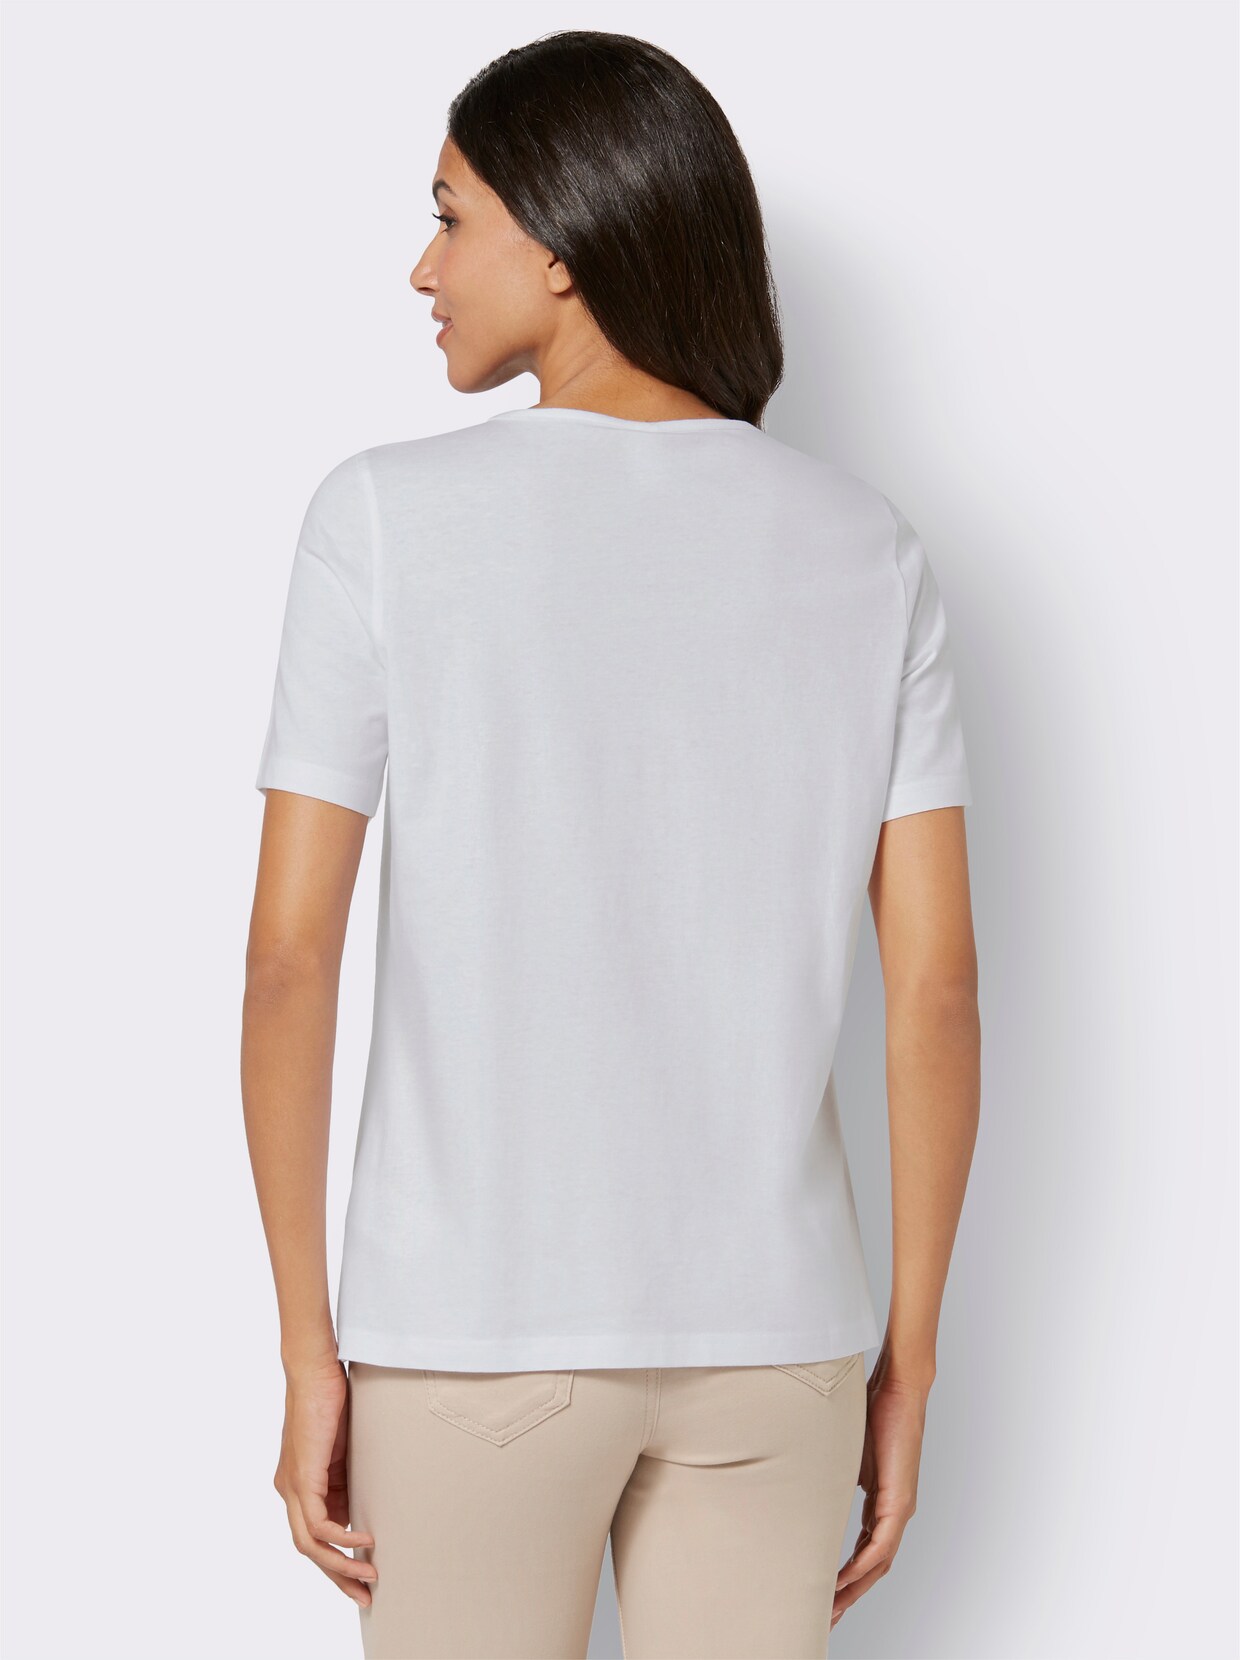 Tričko s krátkým rukávem - ecru-vzor